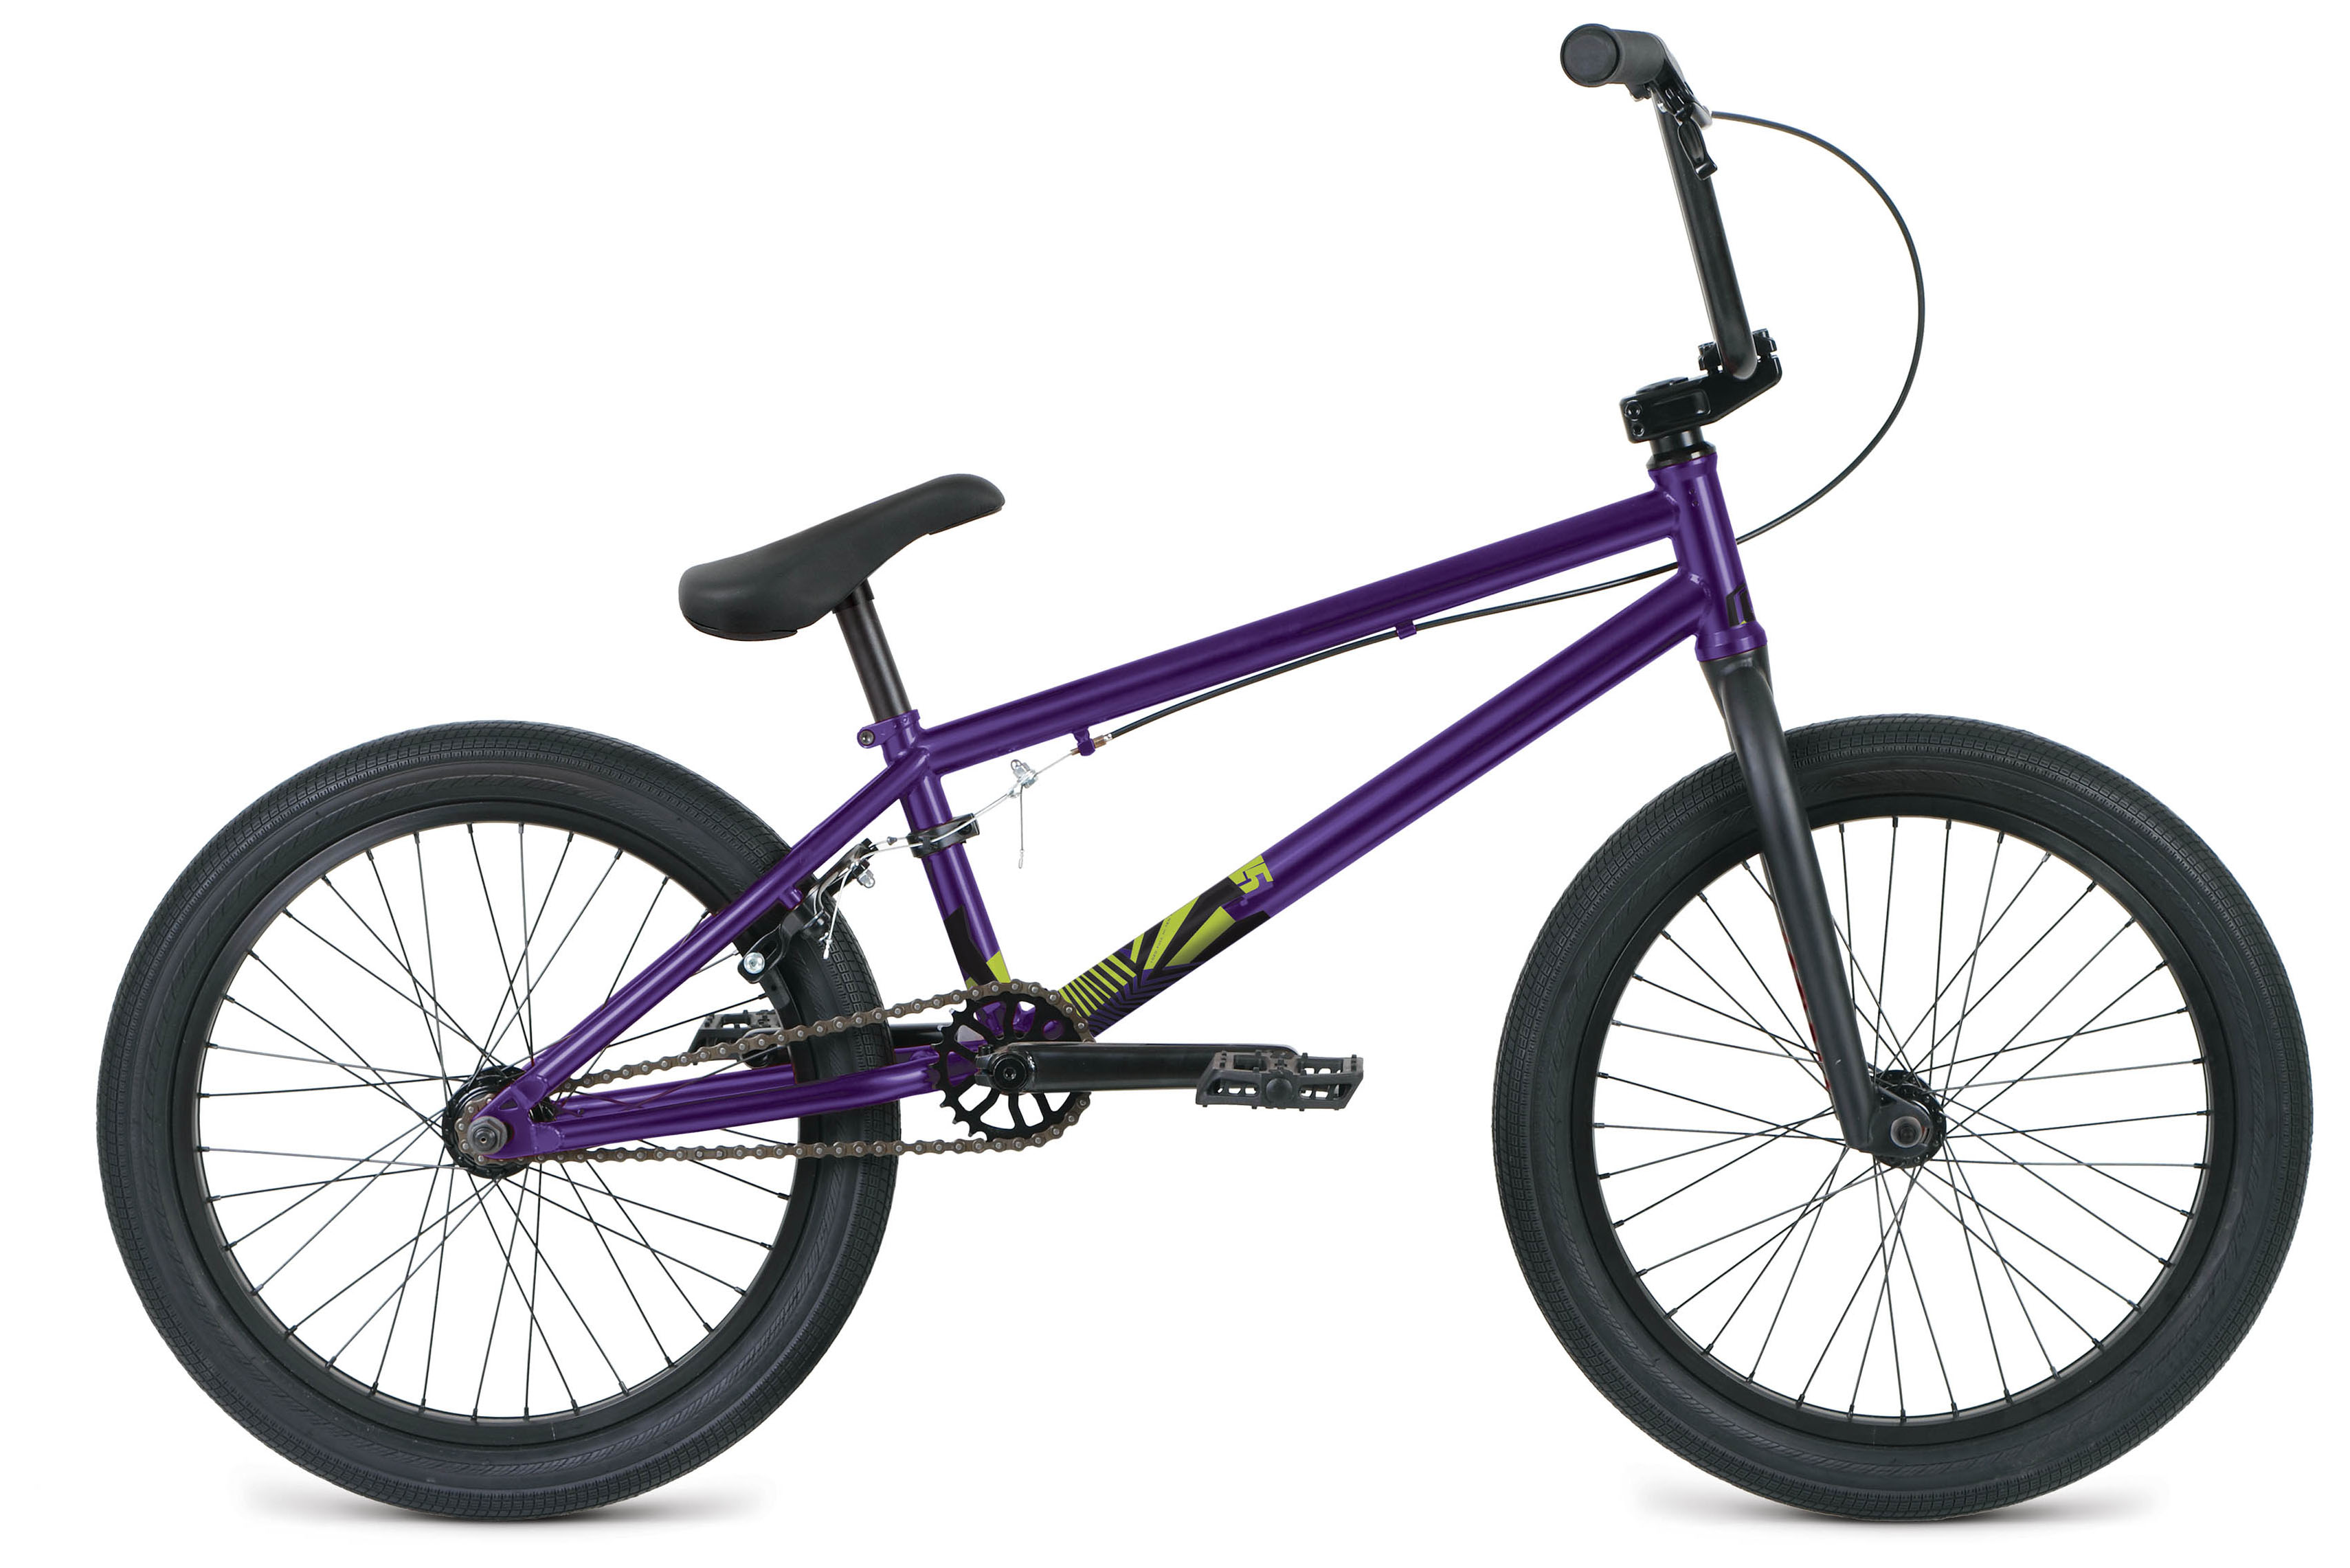  Велосипед Format 3215 20 2019